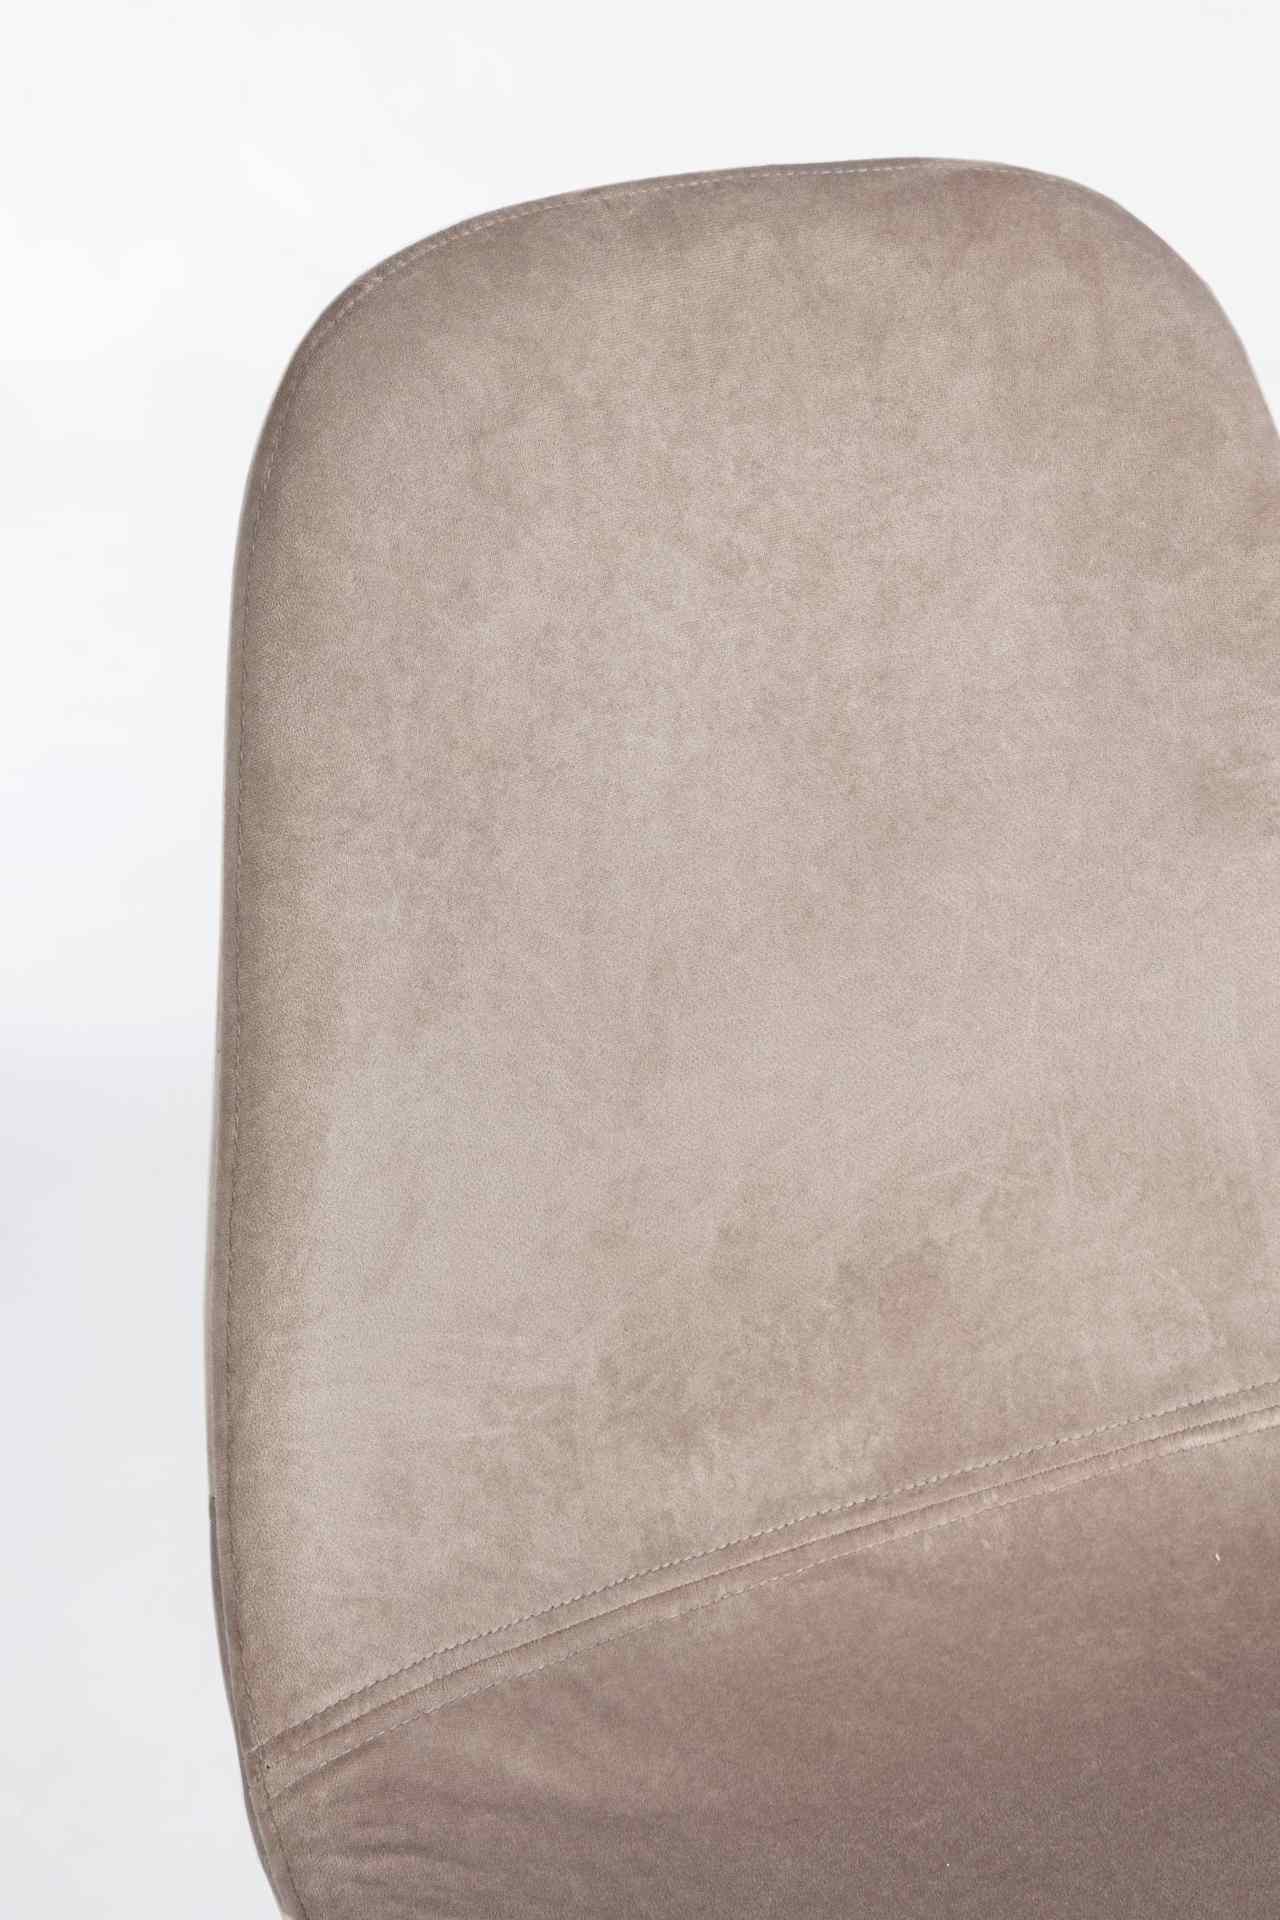 Der Esszimmerstuhl Irelia überzeugt mit seinem modernem Design. Gefertigt wurde der Stuhl aus einem Samt-Bezug, welcher einen Taupe Farbton besitzt. Das Gestell ist aus Metall und ist schwarz. Die Sitzhöhe beträgt 47 cm.